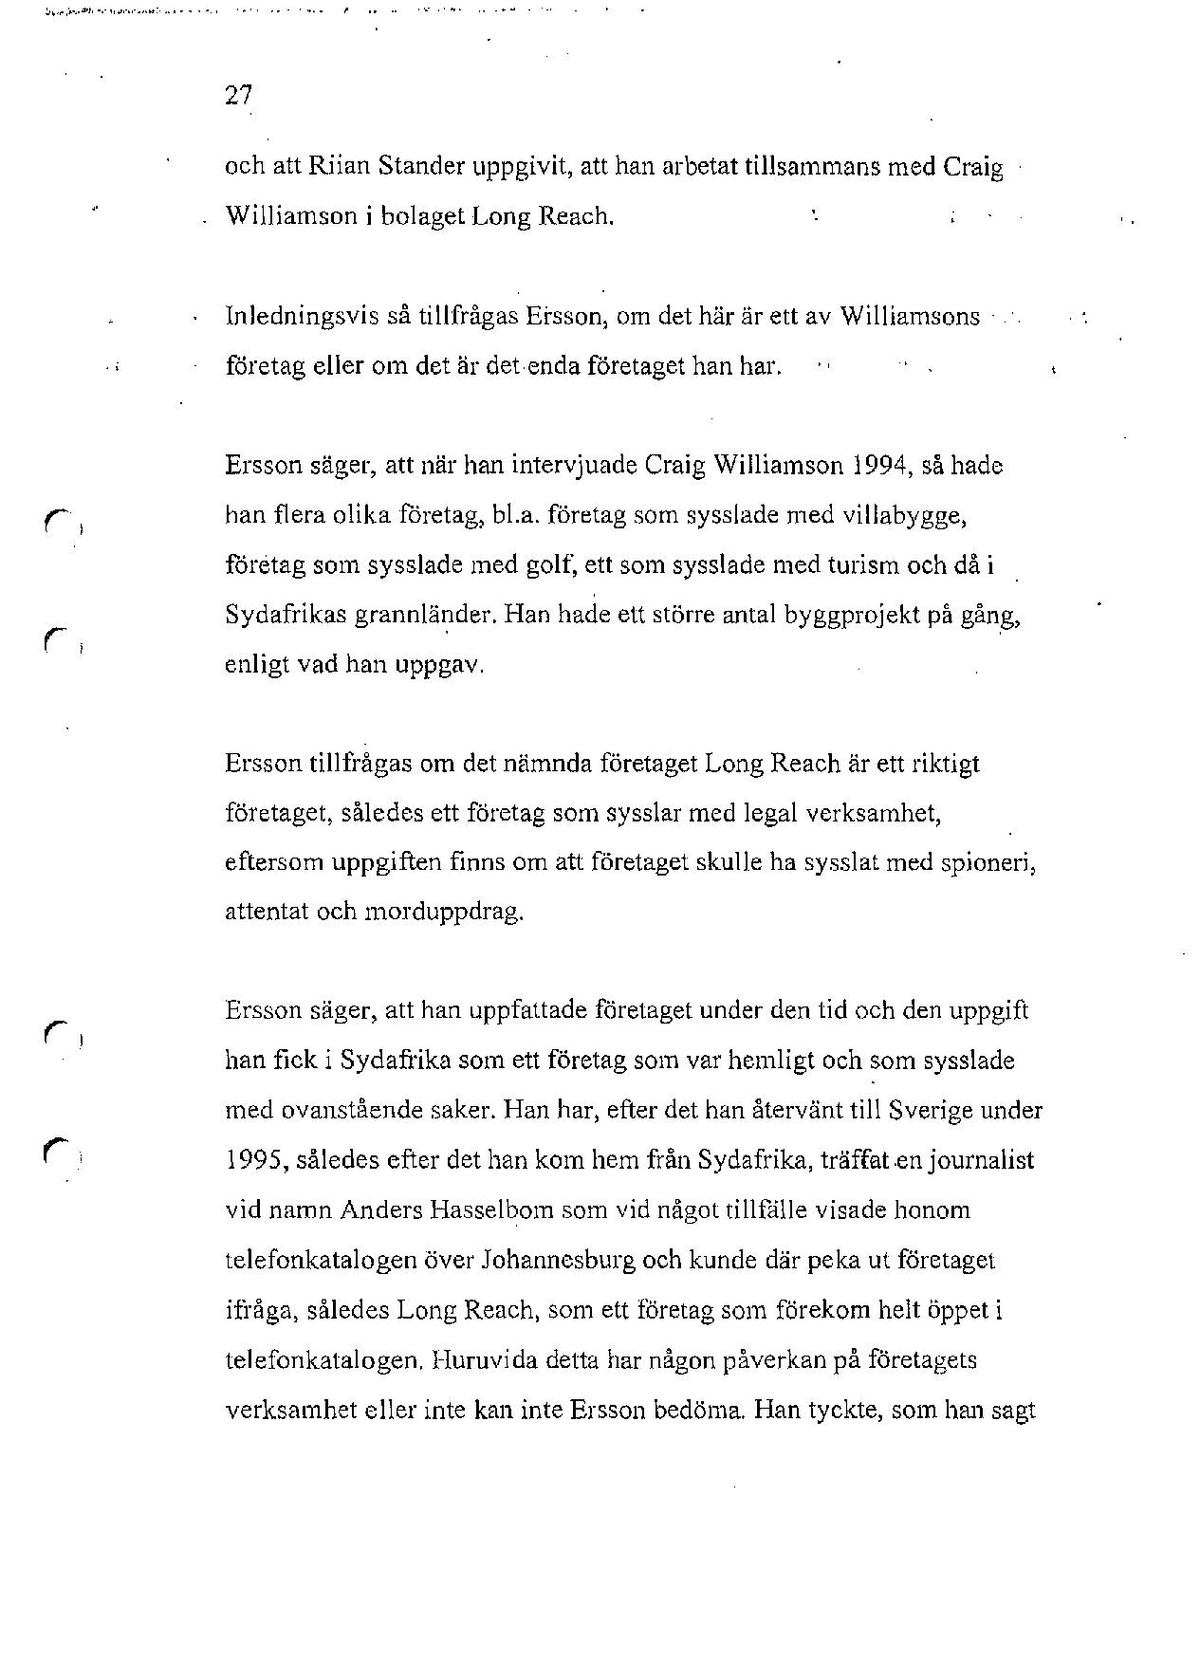 Pol-1996-10-18 0905-1609 HBG5082-00 Förhör av Boris Ersson.pdf